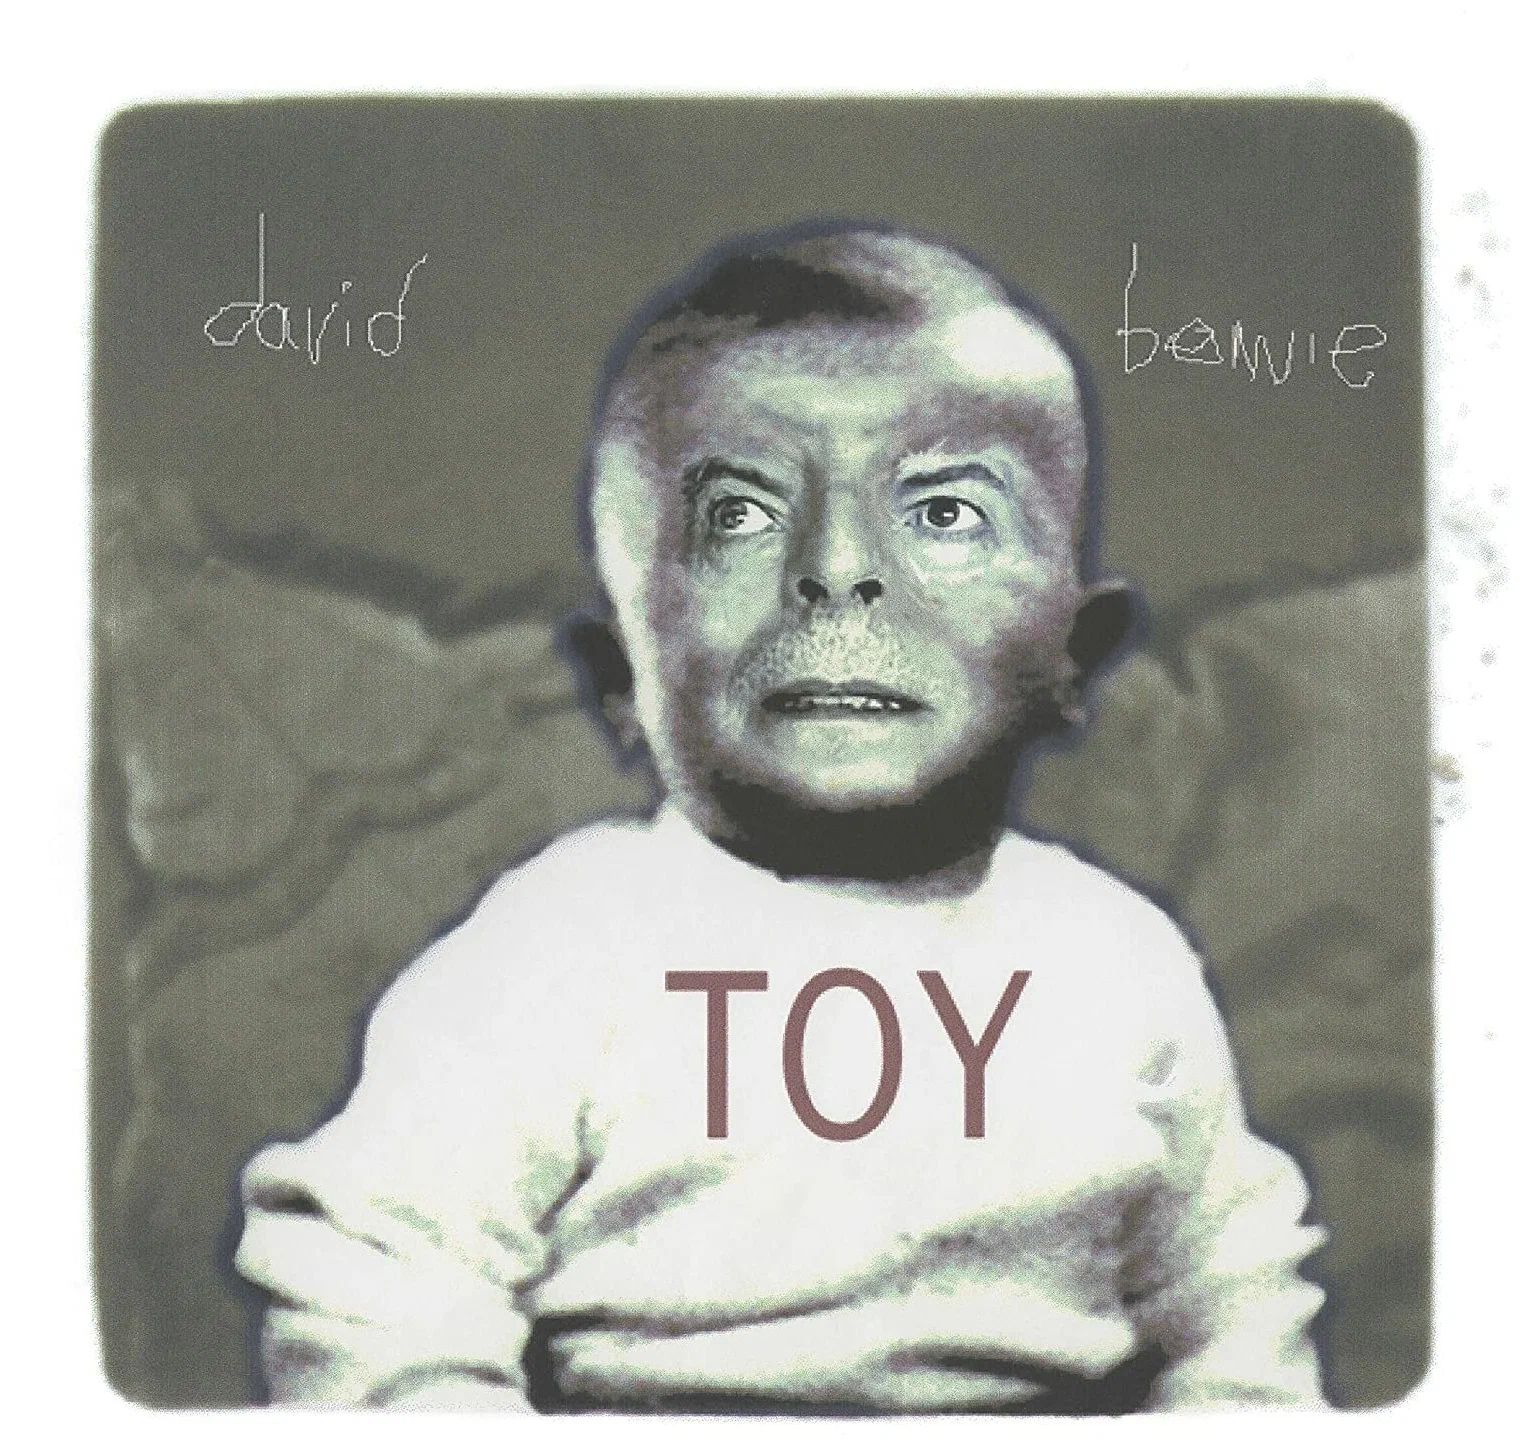 Виниловая Пластинка Bowie, David Toy (0190295253257) bowie david toy 106lp конверты внутренние coex для грампластинок 12 25шт набор